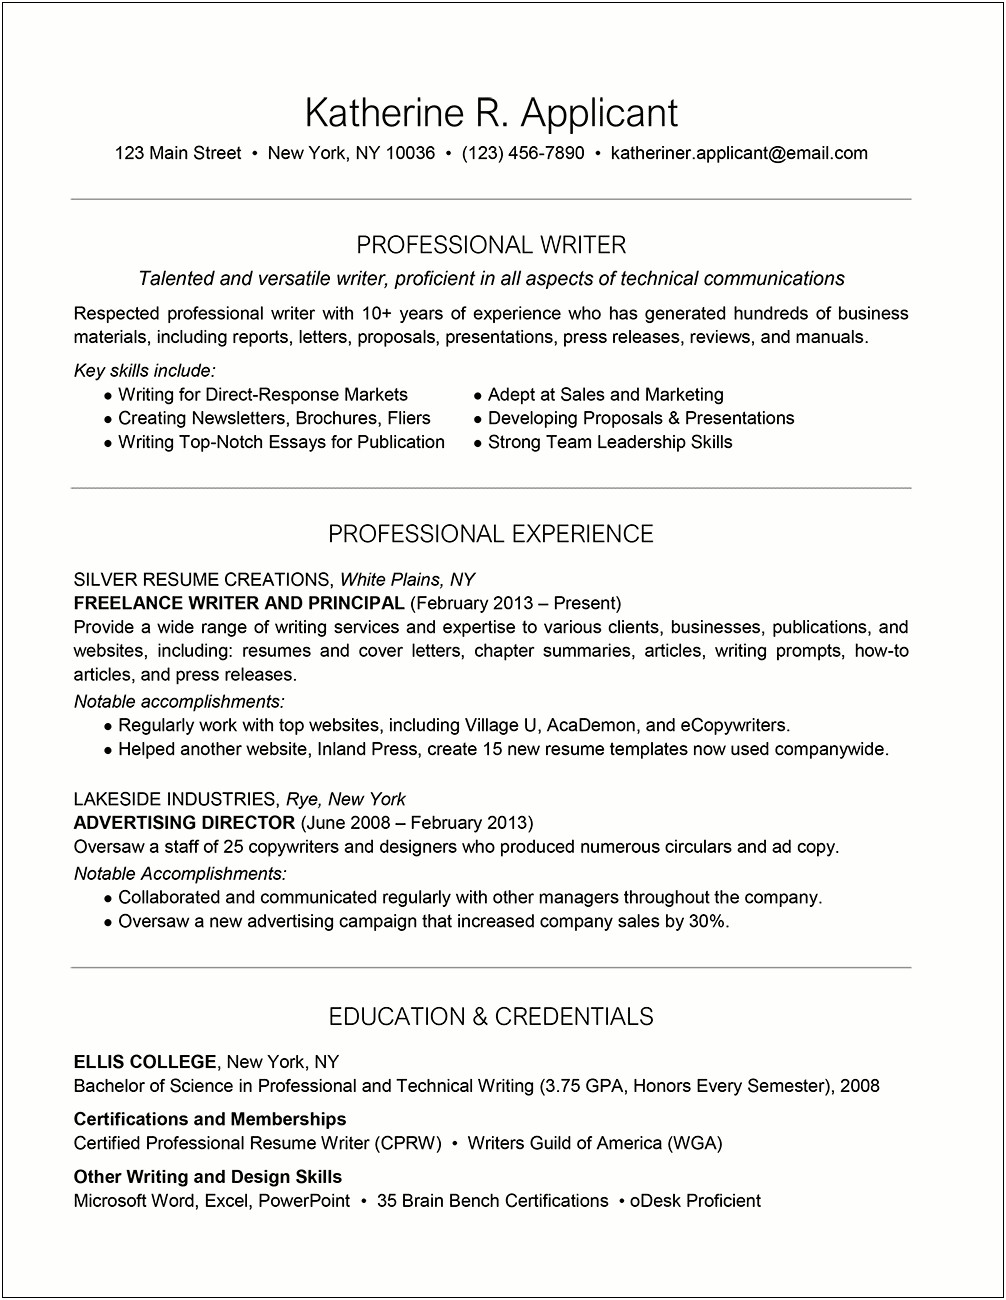 Resume For Creative Writer Sample